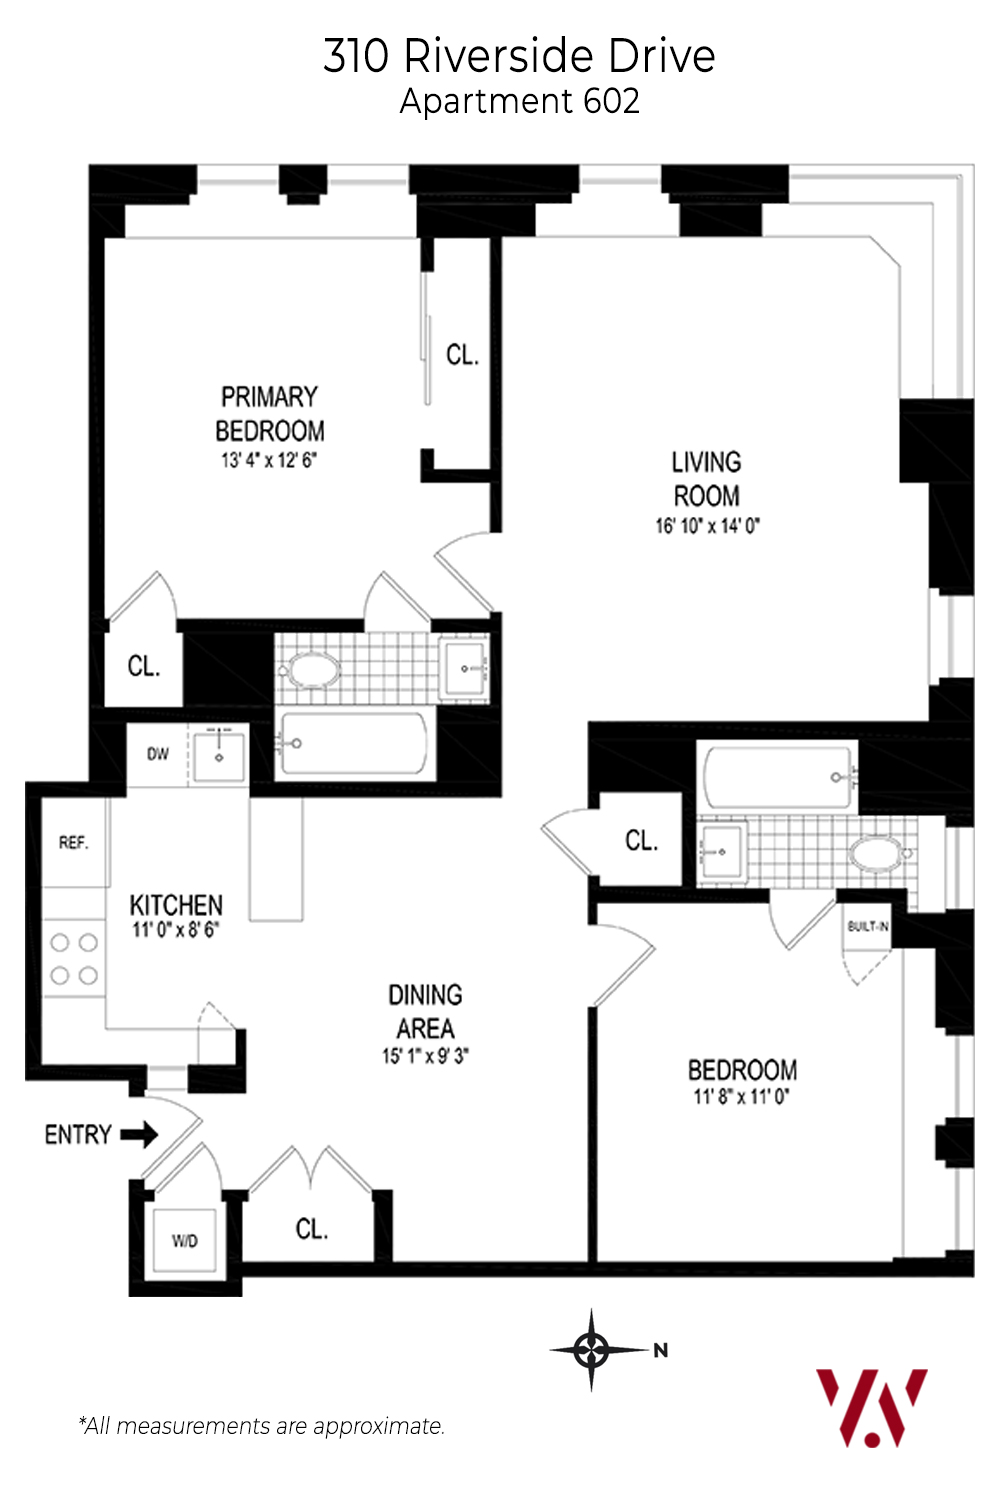 310-Riverside-Drive-602—Floor-Plan